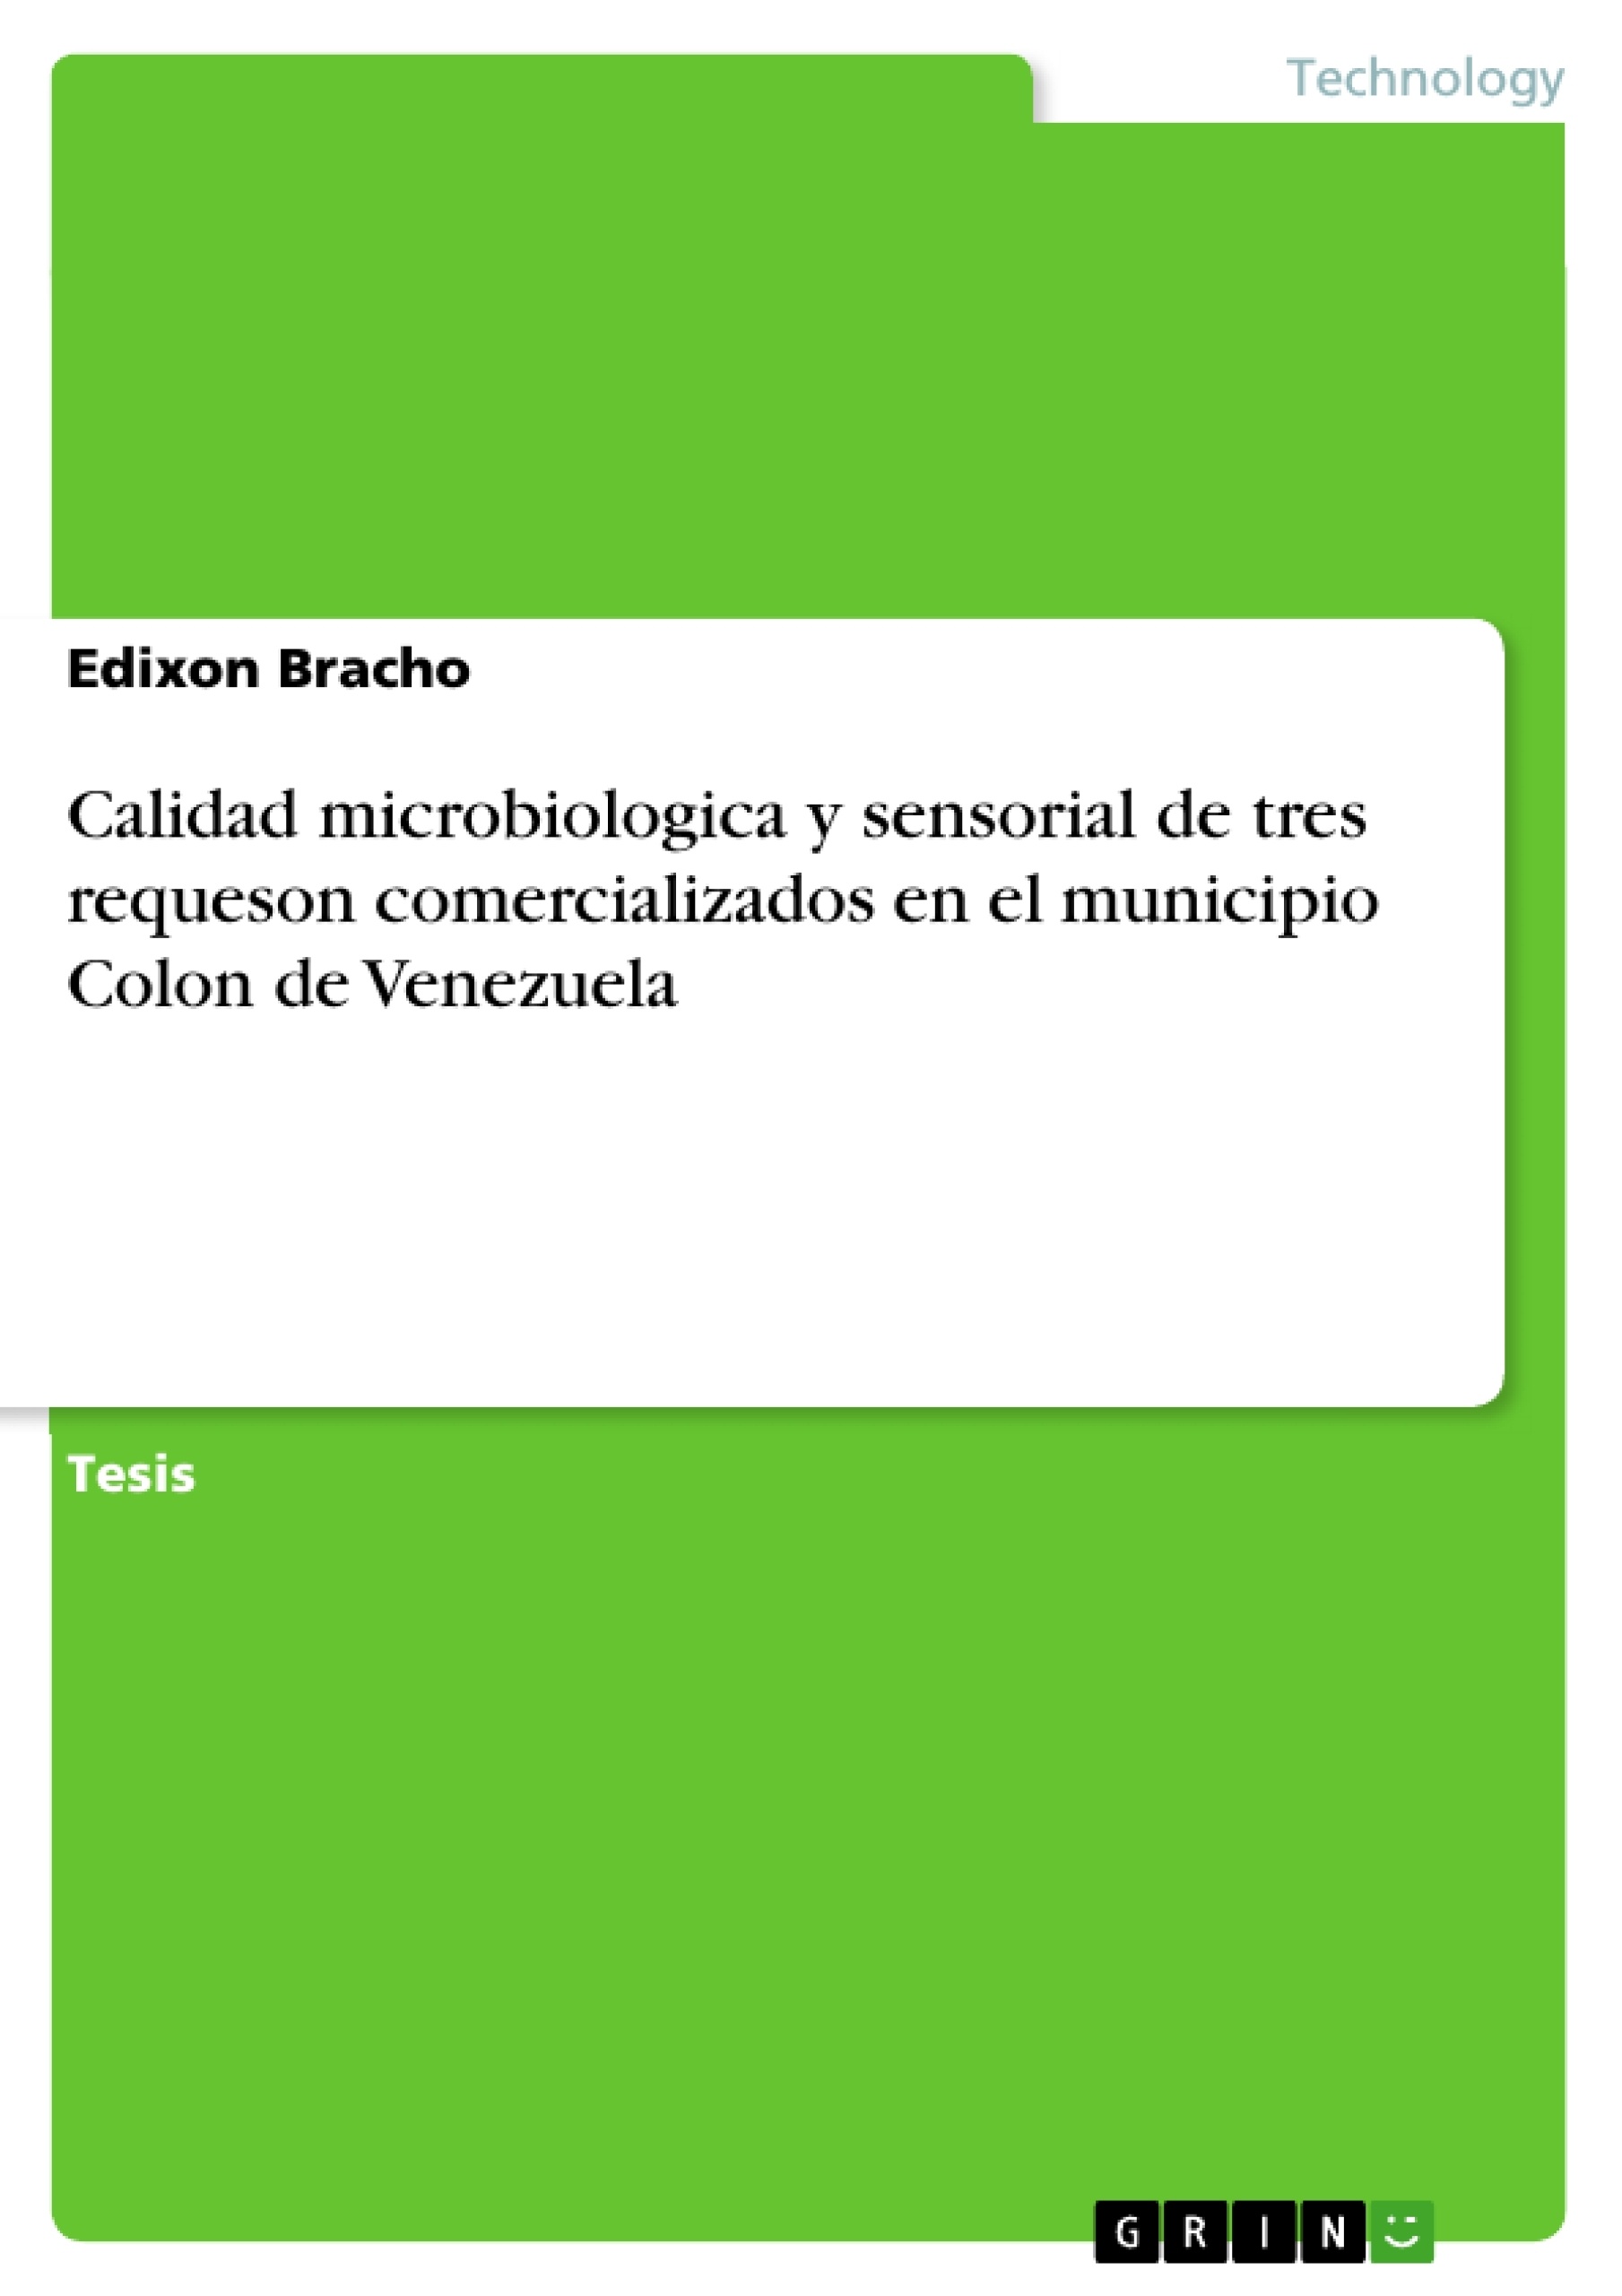 Titre: Calidad microbiologica y sensorial de tres requeson comercializados en el municipio Colon de Venezuela